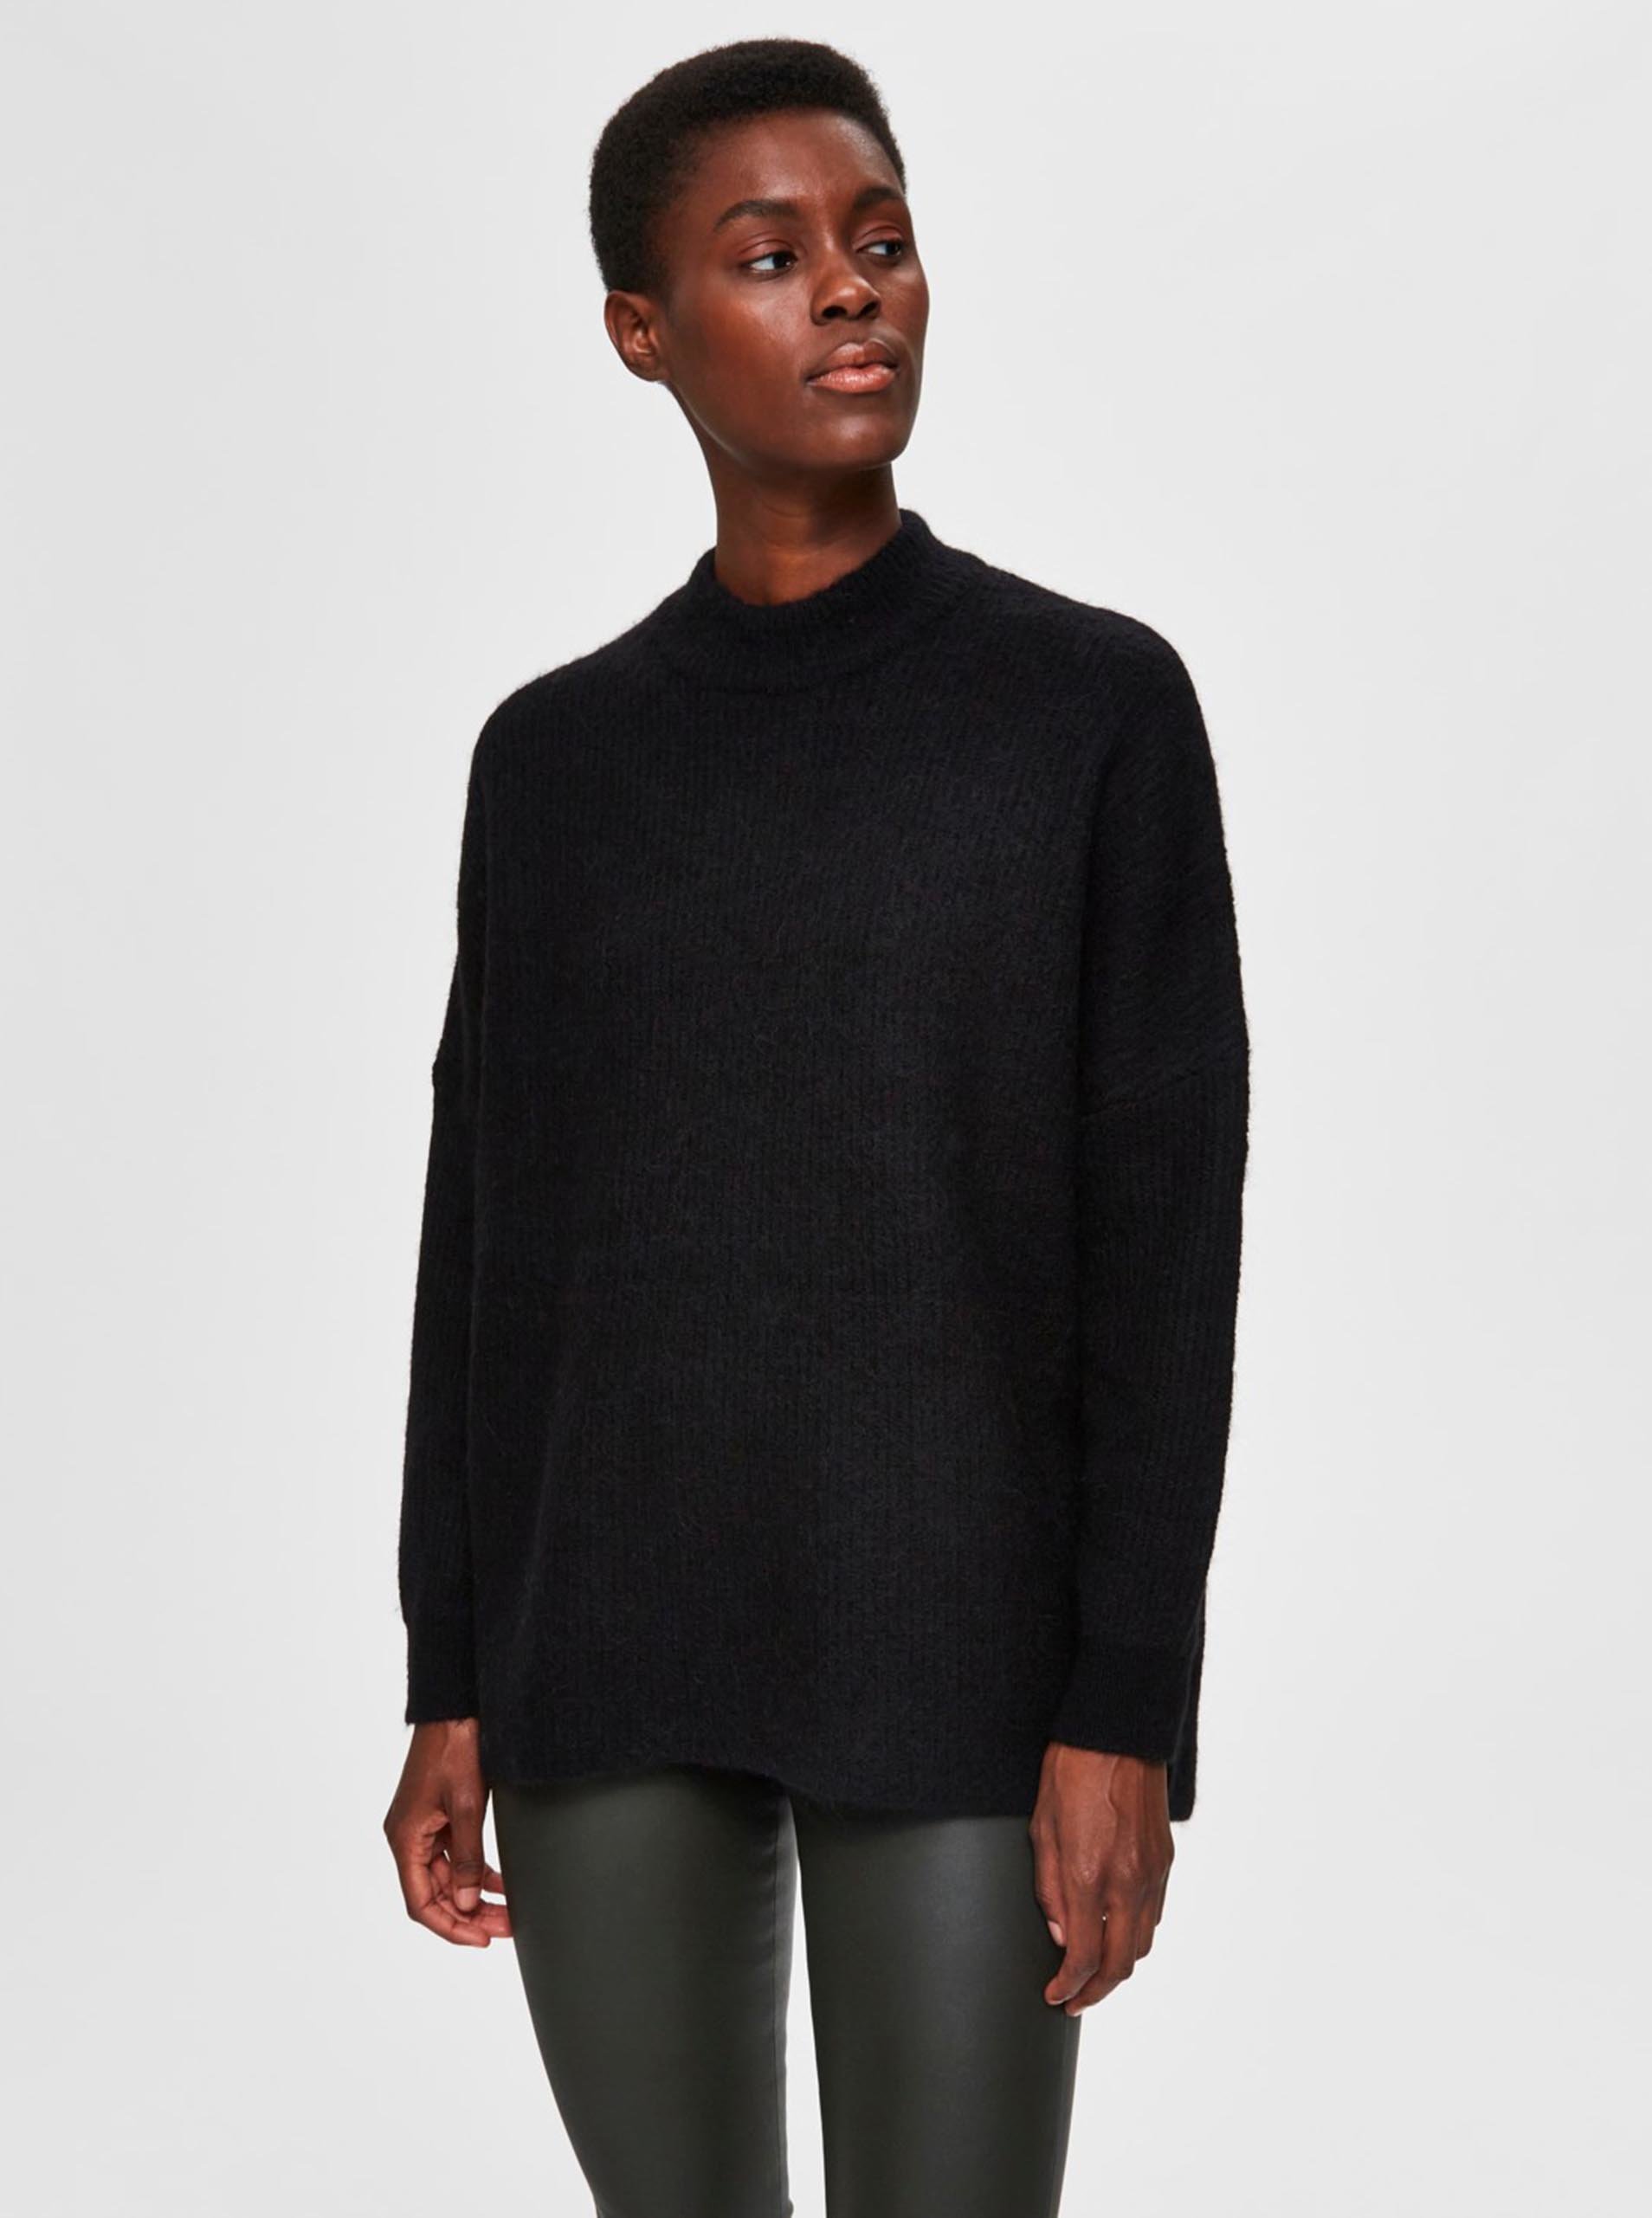 Černý vlněný svetr Selected Femme Lulu